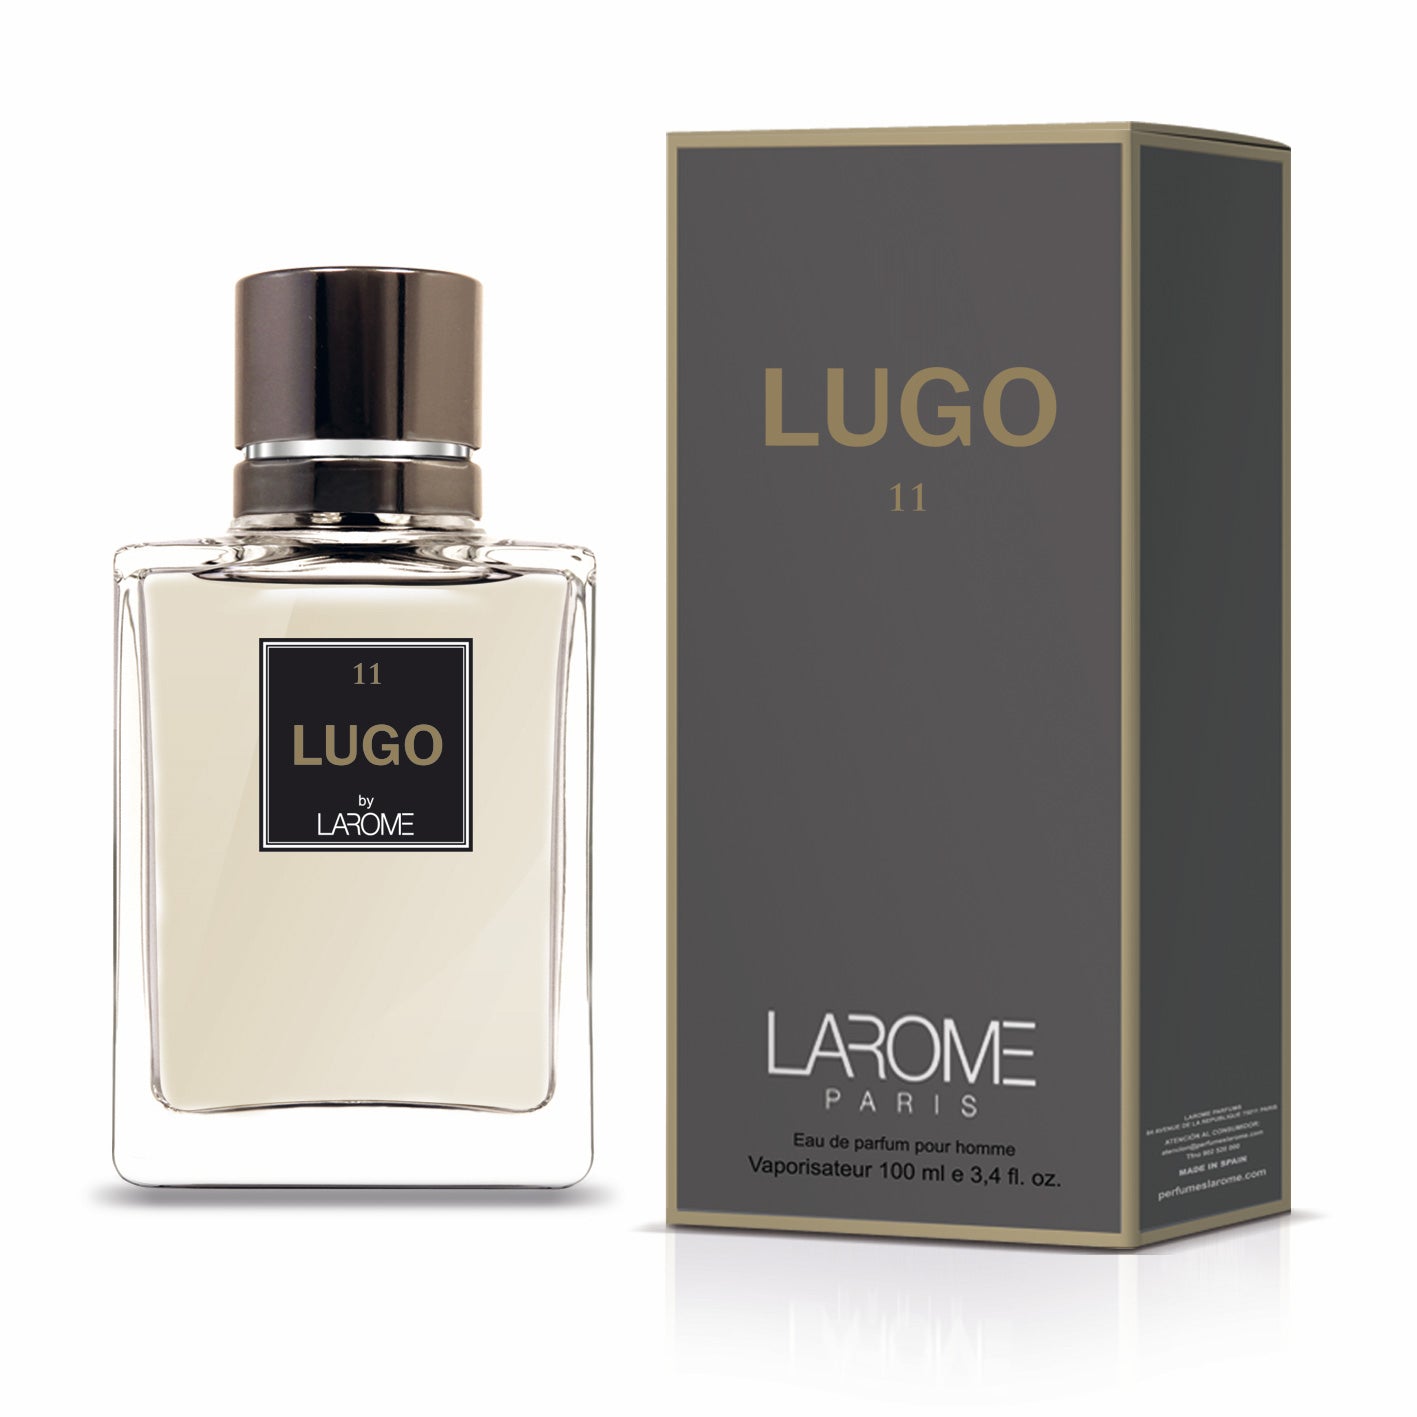 Lugo 11M by Larome geïnspireerd door Hugo